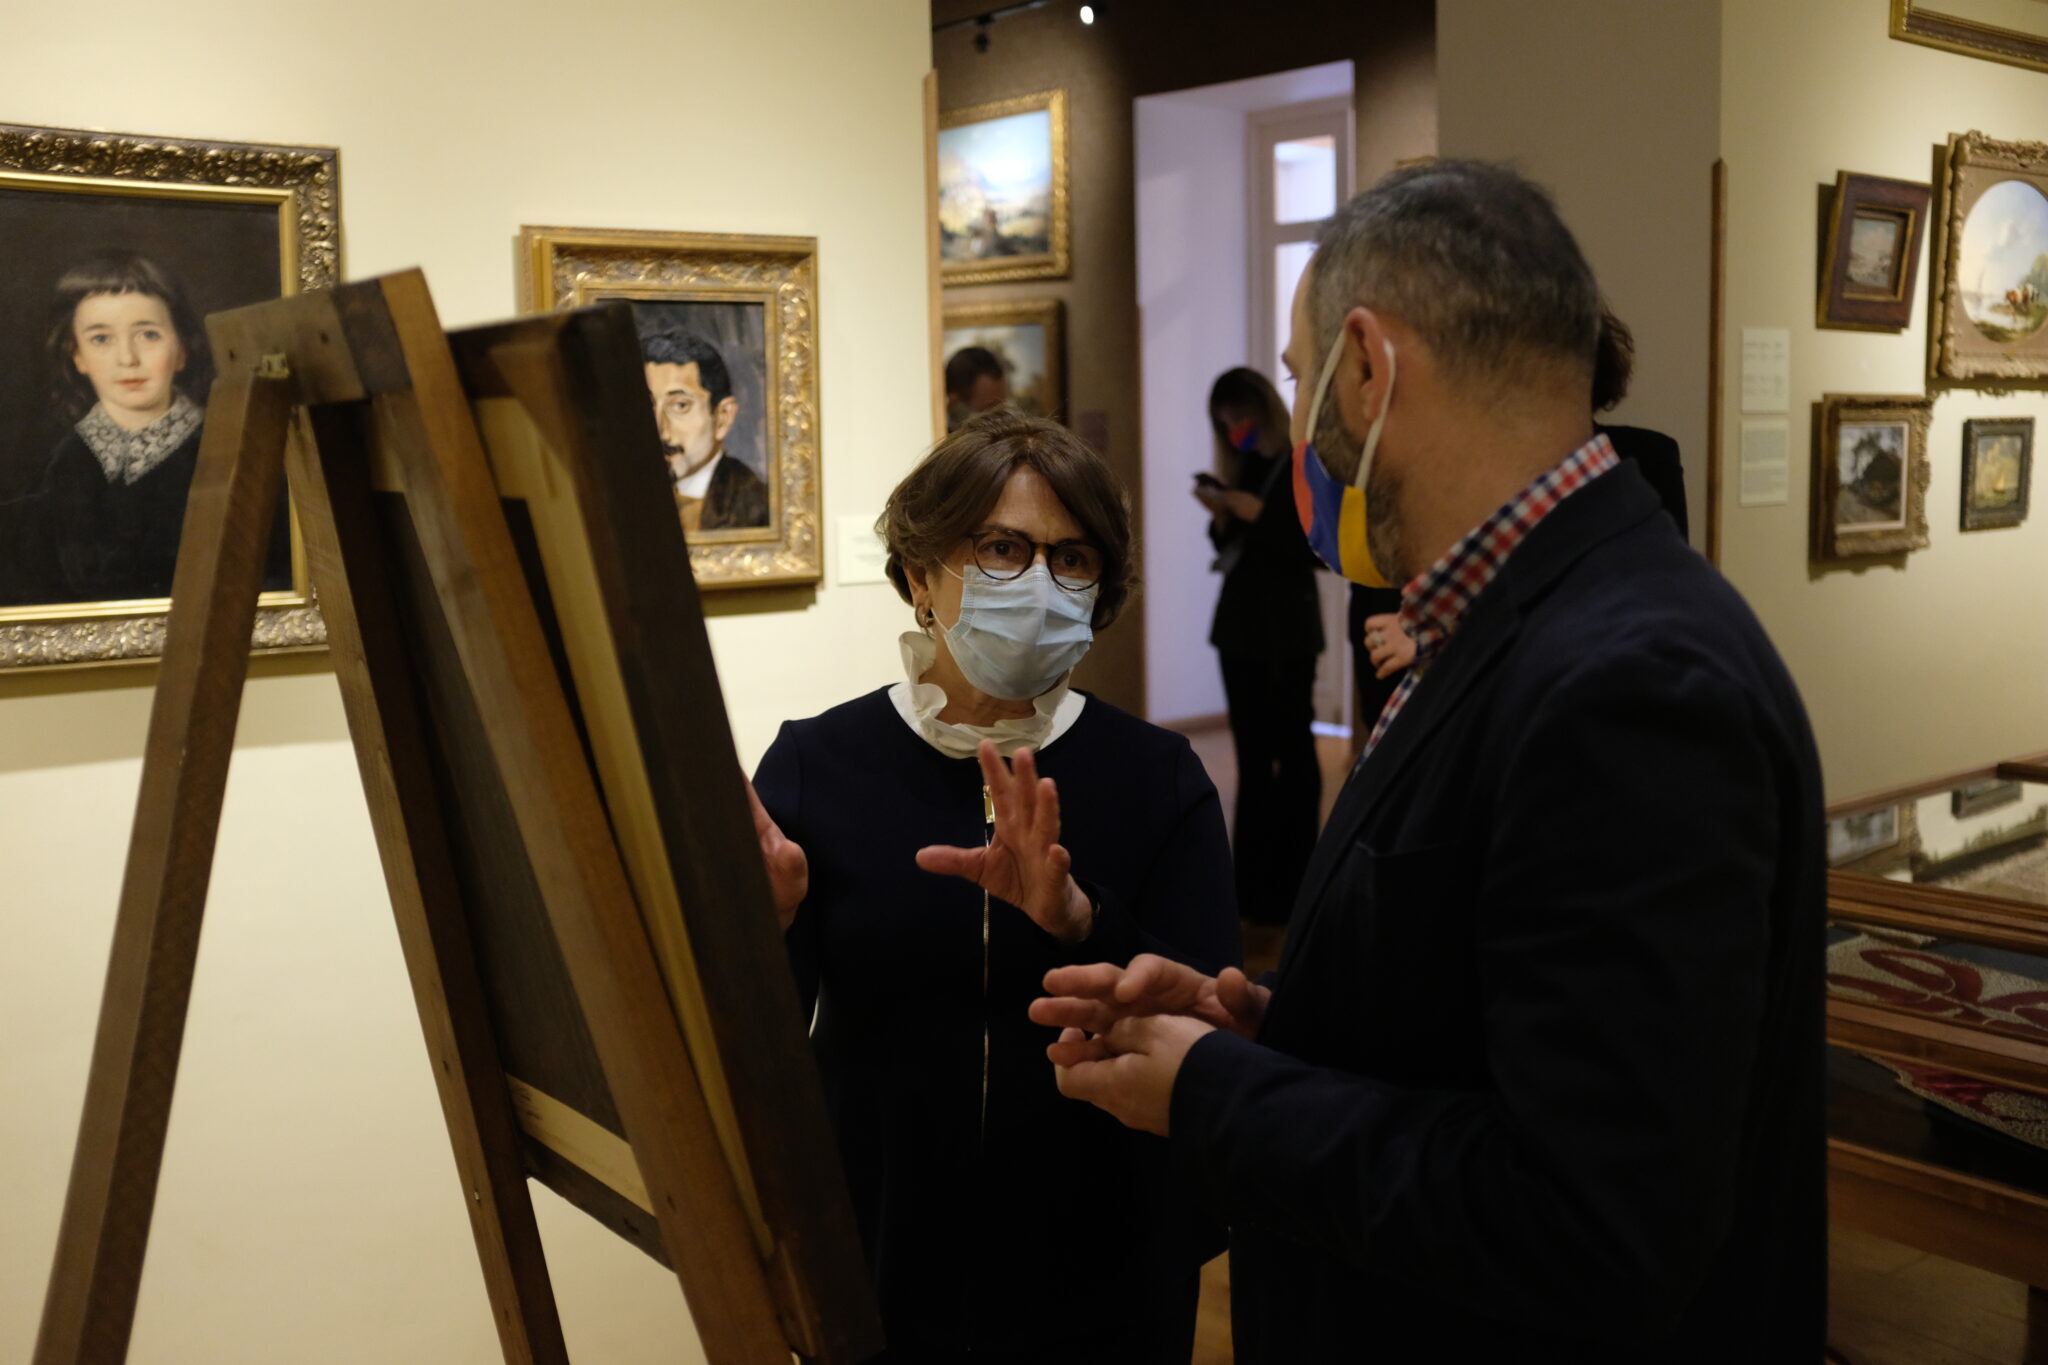 “Армянский уголок” тбилисского музея искусств “Art Palace”: Нуне Саркисян посетила музей 